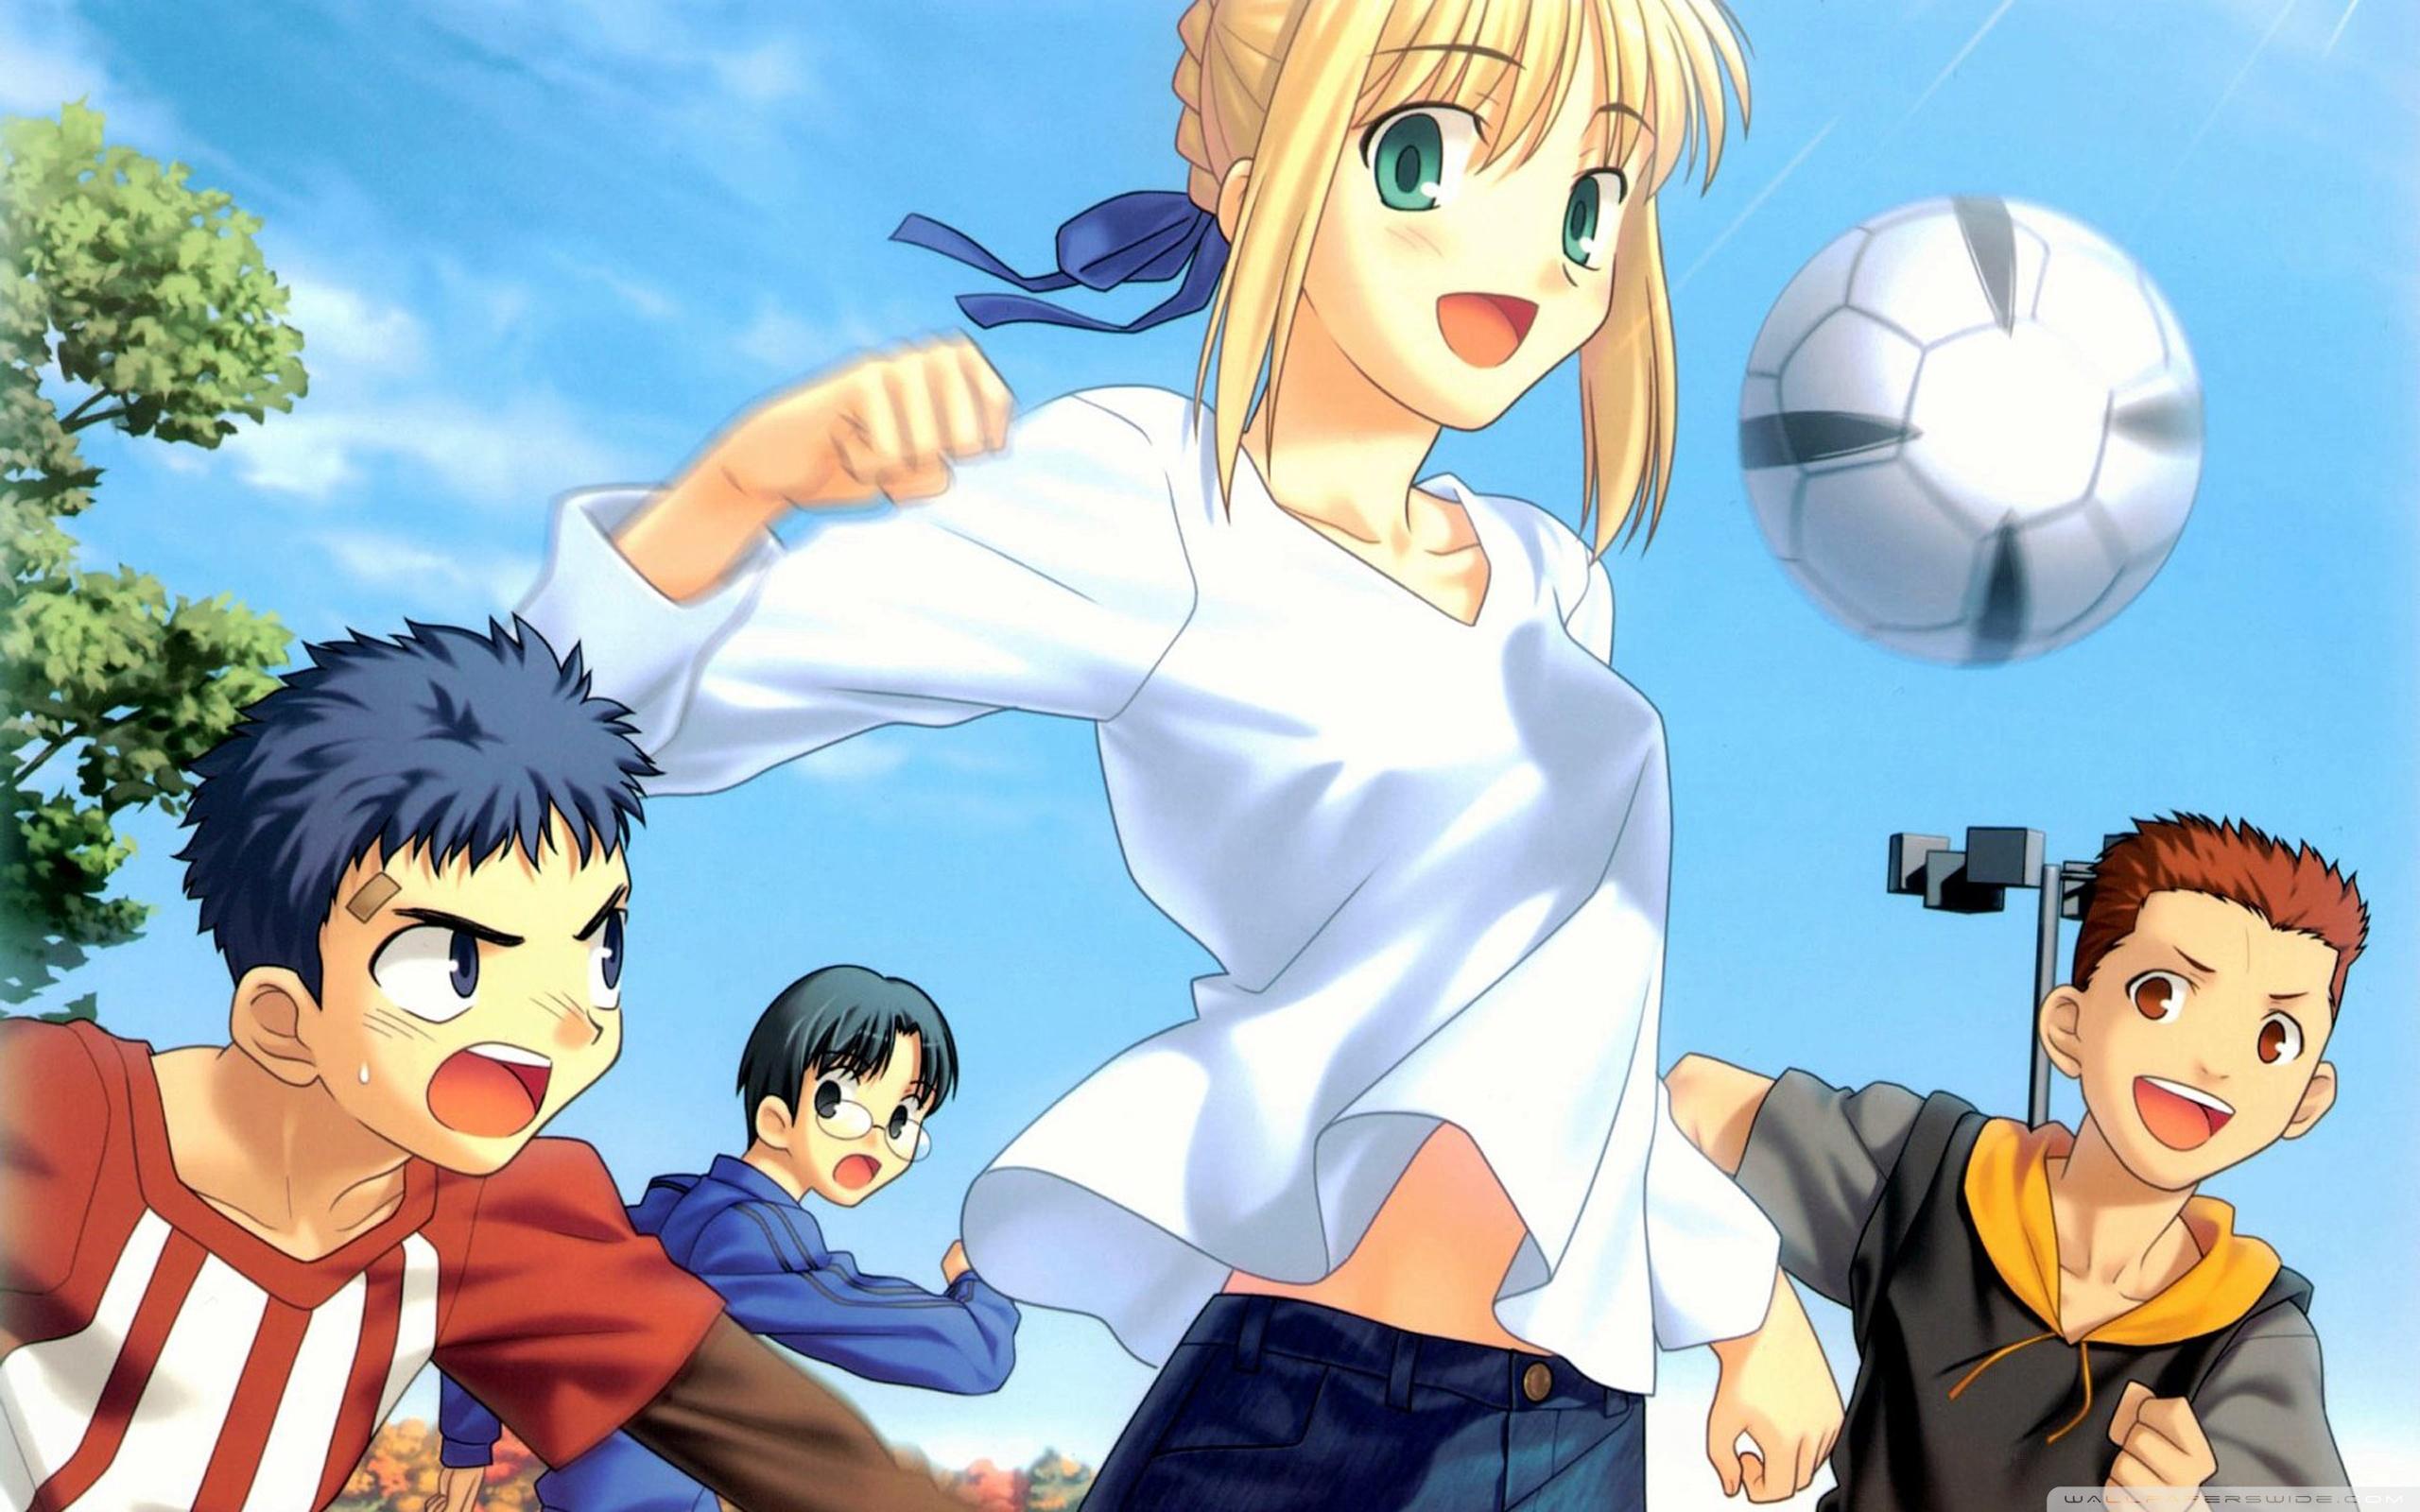 Anime Soccer Girl Ultra HD Desktop Background Wallpaper for 4K UHD